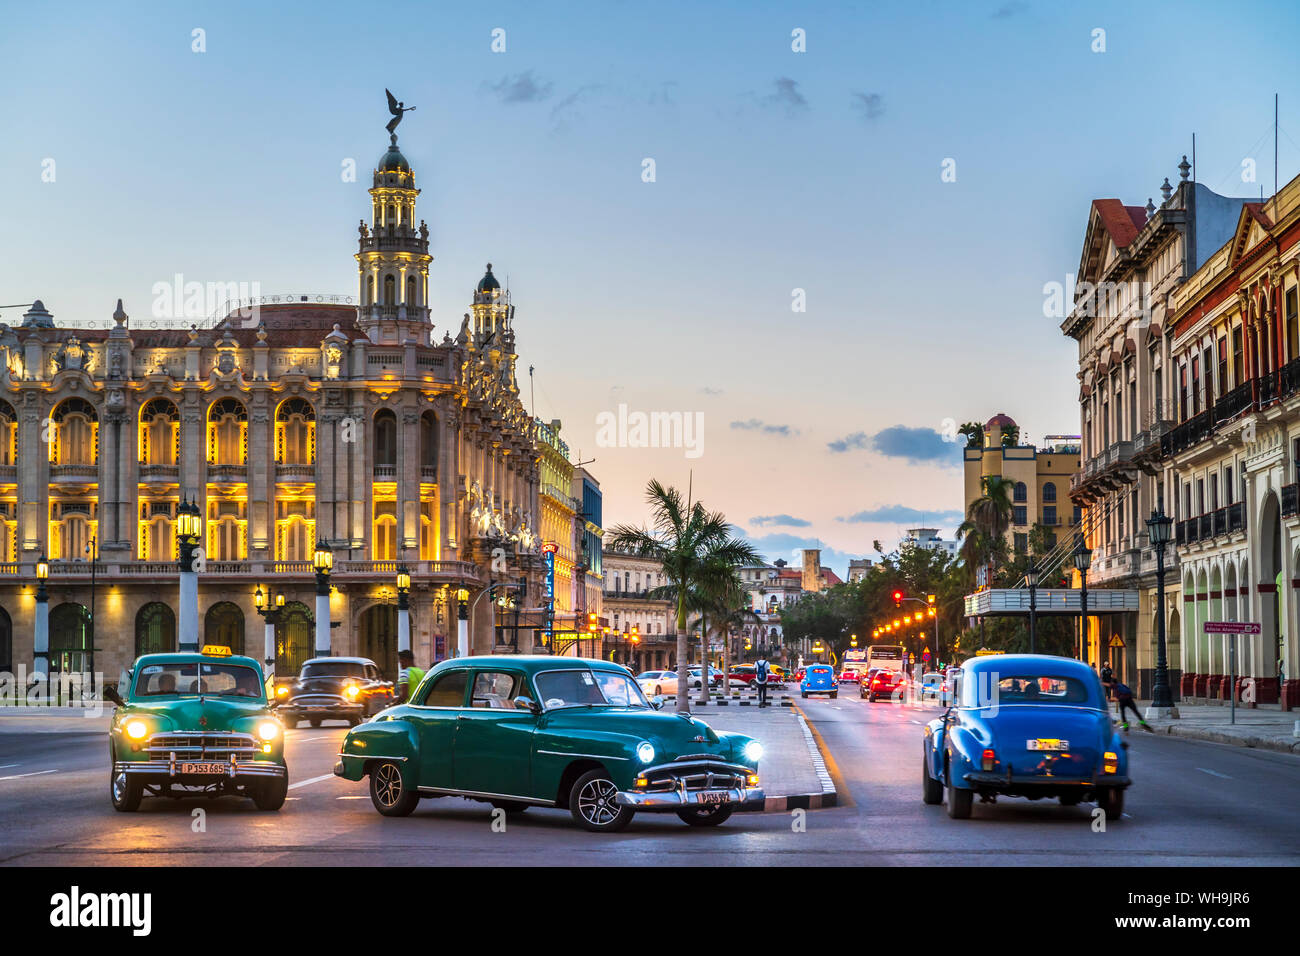 American Vintage voitures tourner et le Gran Teatro de La Habana au crépuscule, l'UNESCO, La Havane, Cuba, Antilles, Caraïbes, Amérique Centrale Banque D'Images